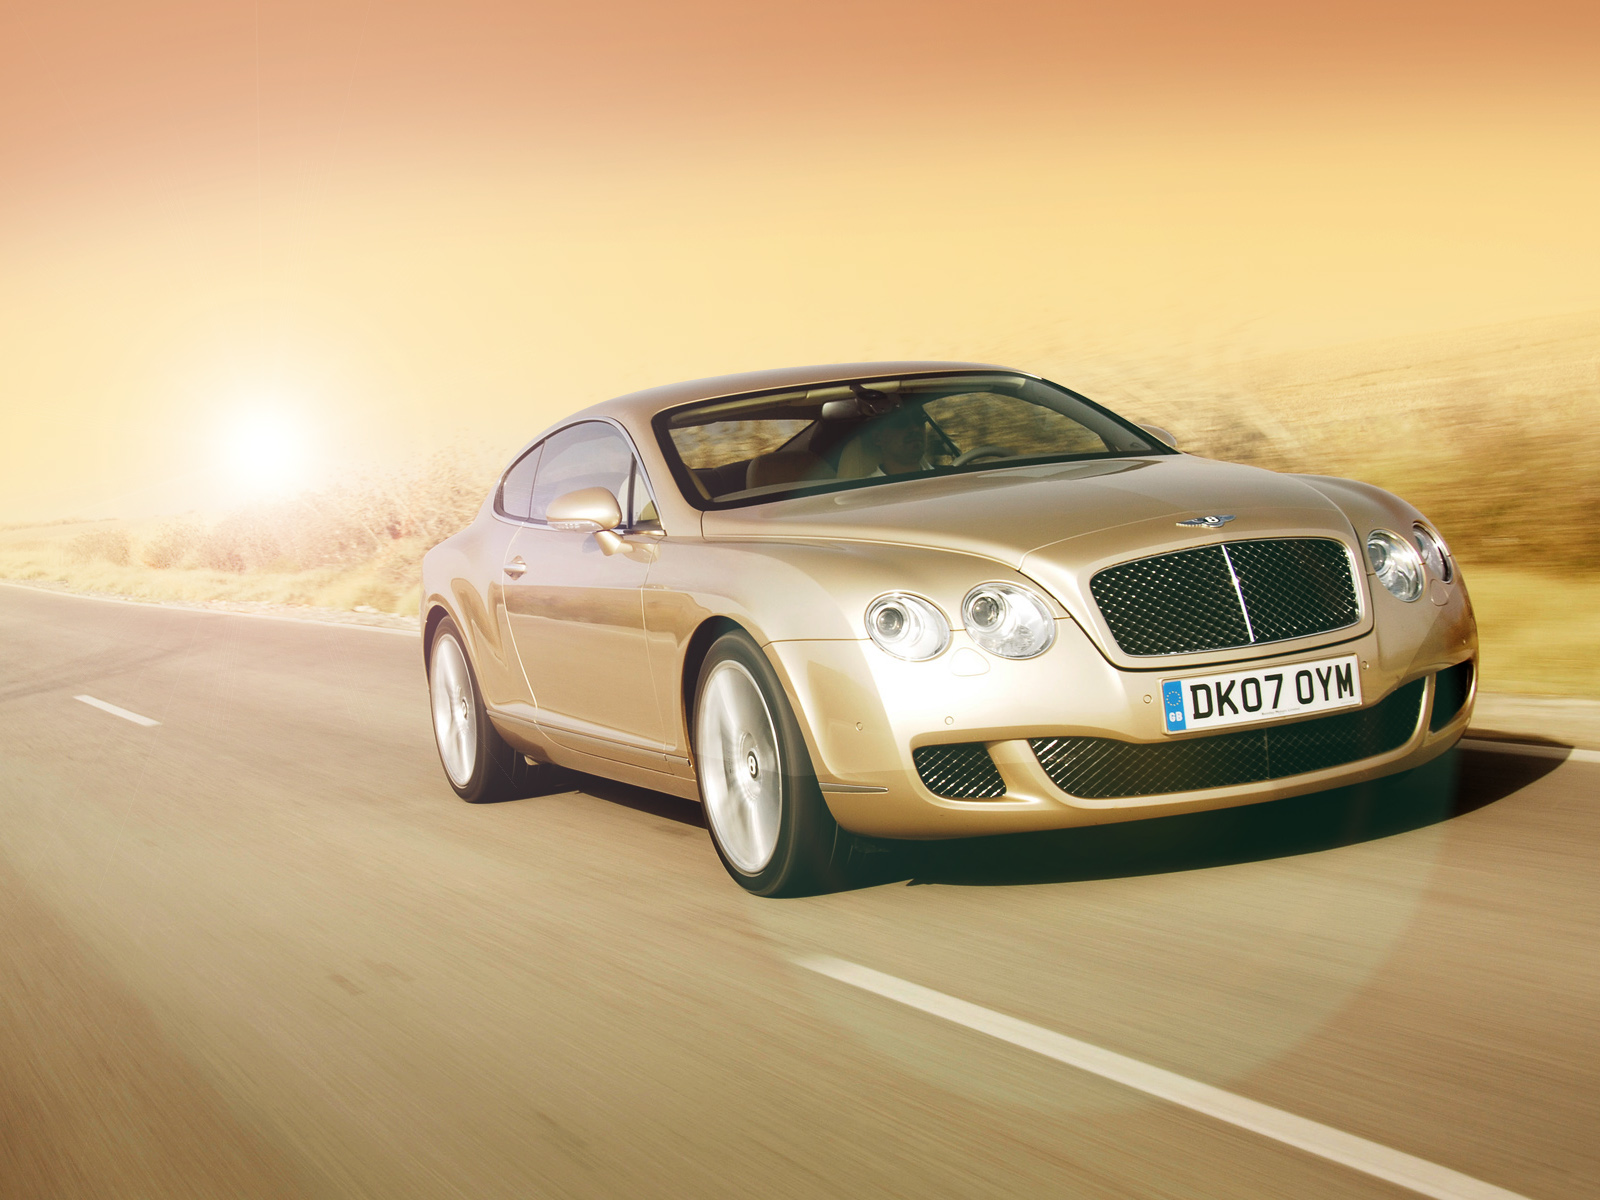 Скачать обои Bentley Continental Gt Скорость на телефон бесплатно